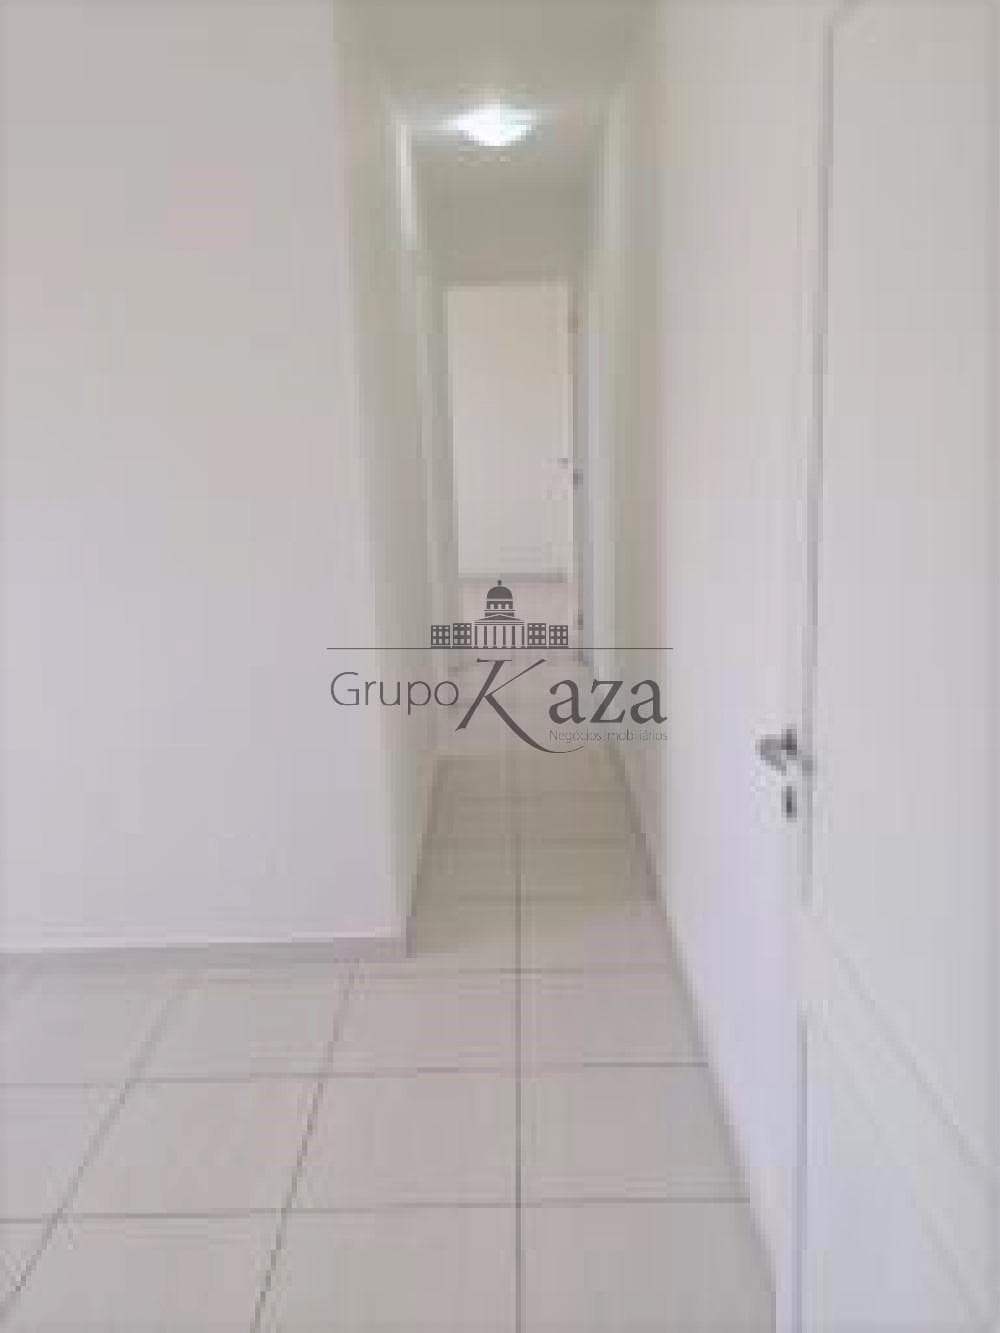 Foto 3 de Apartamento Padrão em Villa Branca, Jacareí - imagem 3